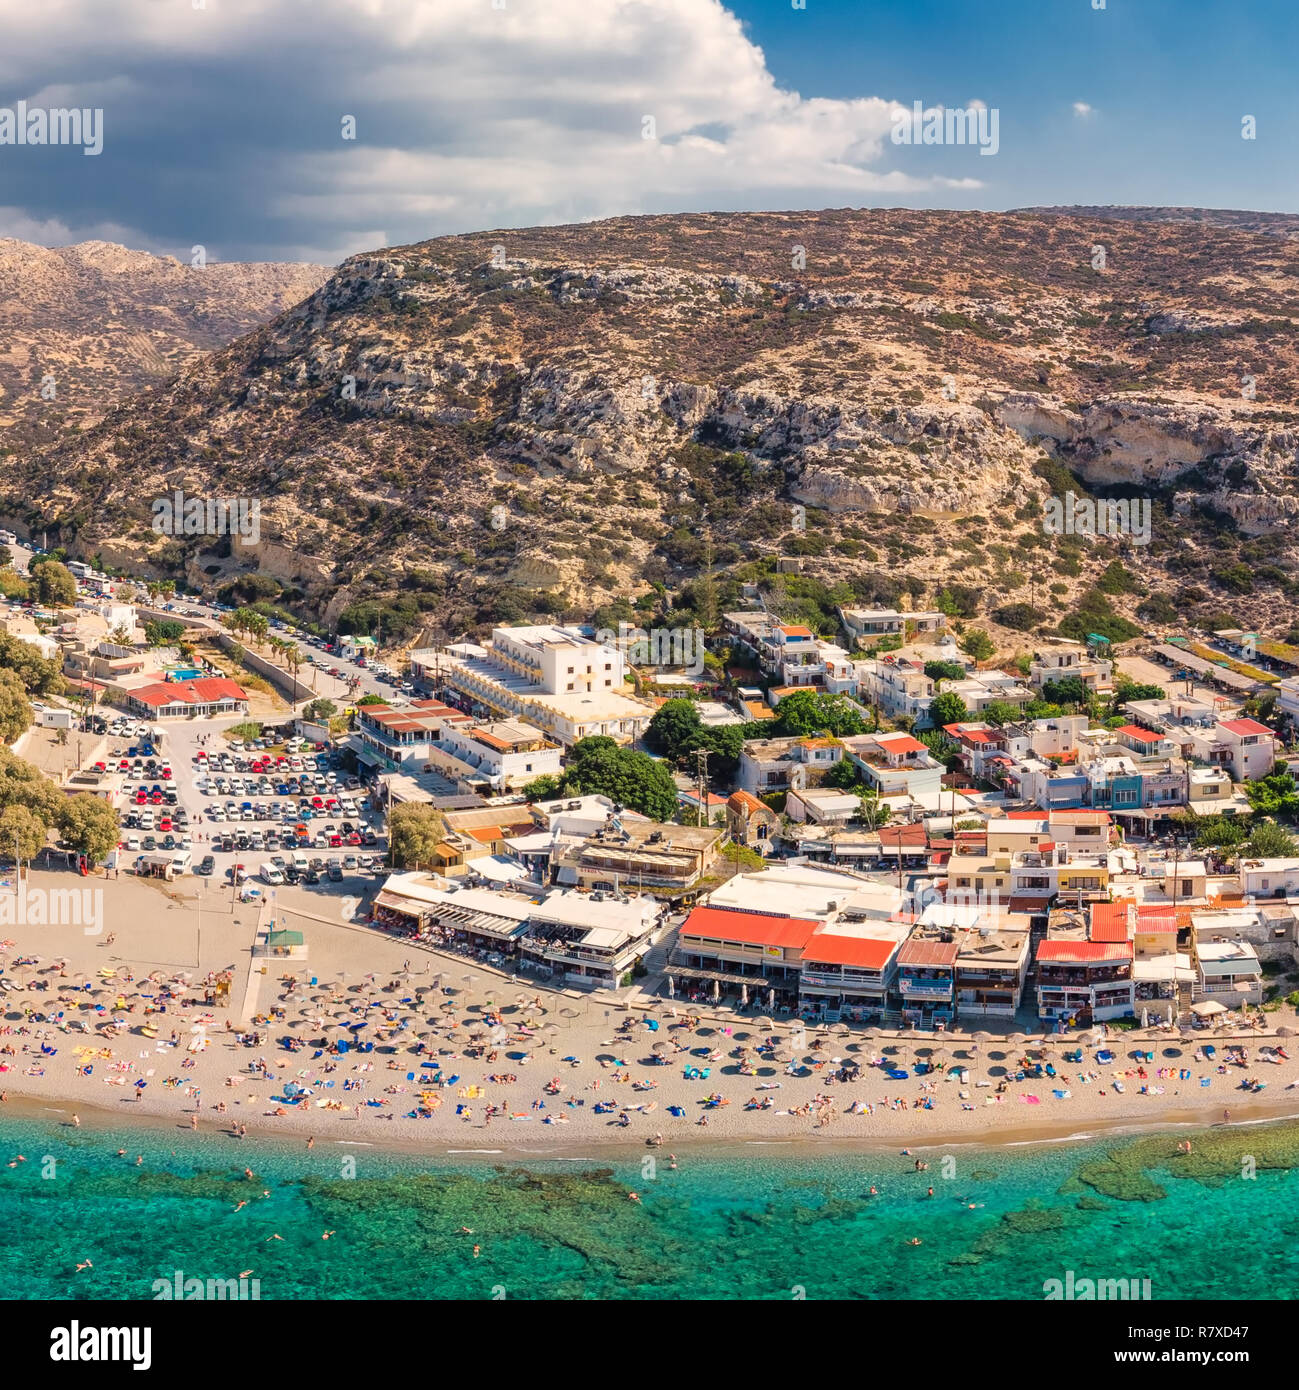 Luftaufnahme von Strand von Matala auf Kreta mit azurblauen Wasser, Griechenland, Europa. Kreta ist die größte und bevölkerungsreichste der griechischen Inseln. Stockfoto